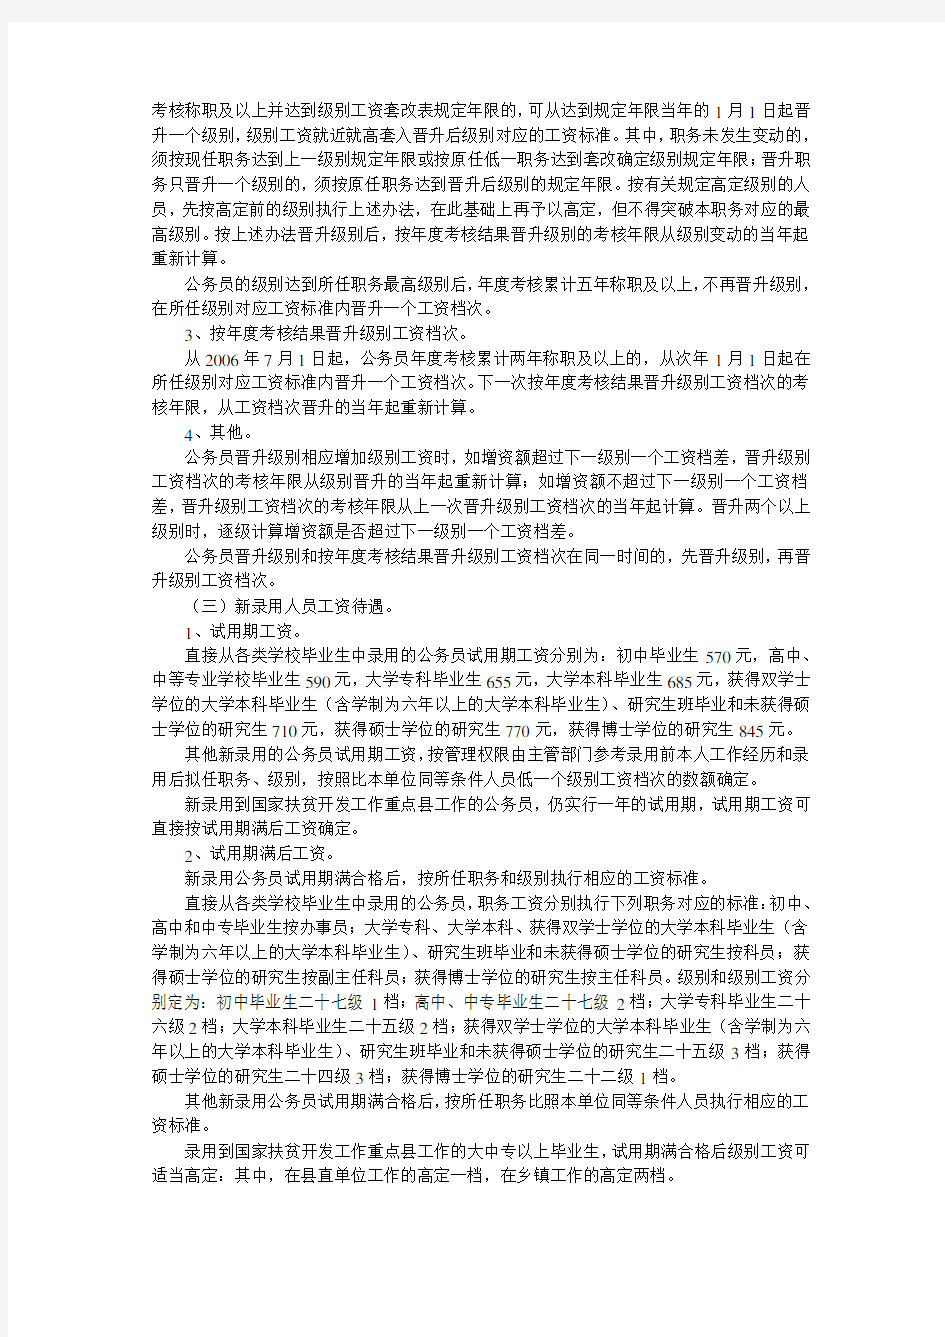 河北省公务员工资制度改革实施意见